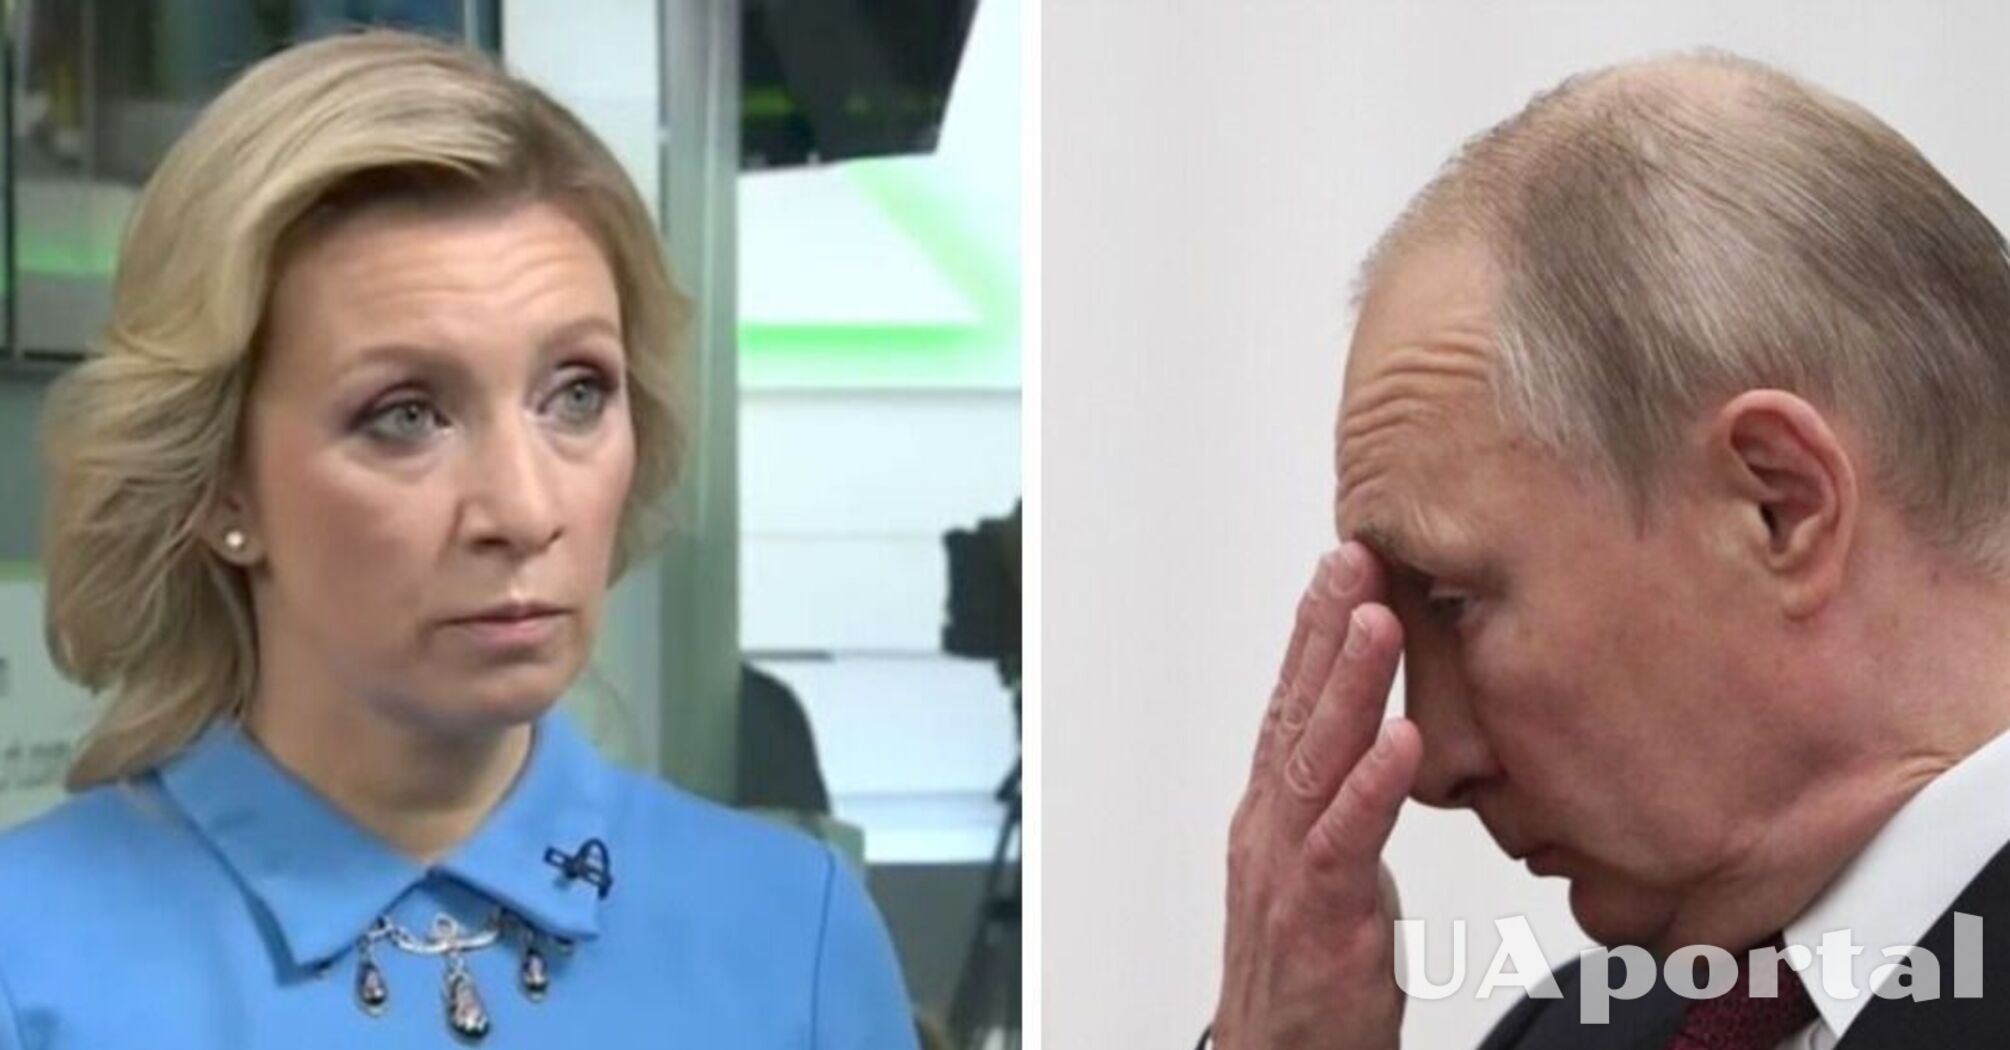 Захарова выдала неадекватное заявление об украинцах: 'хотят такого президента как путин' (видео)